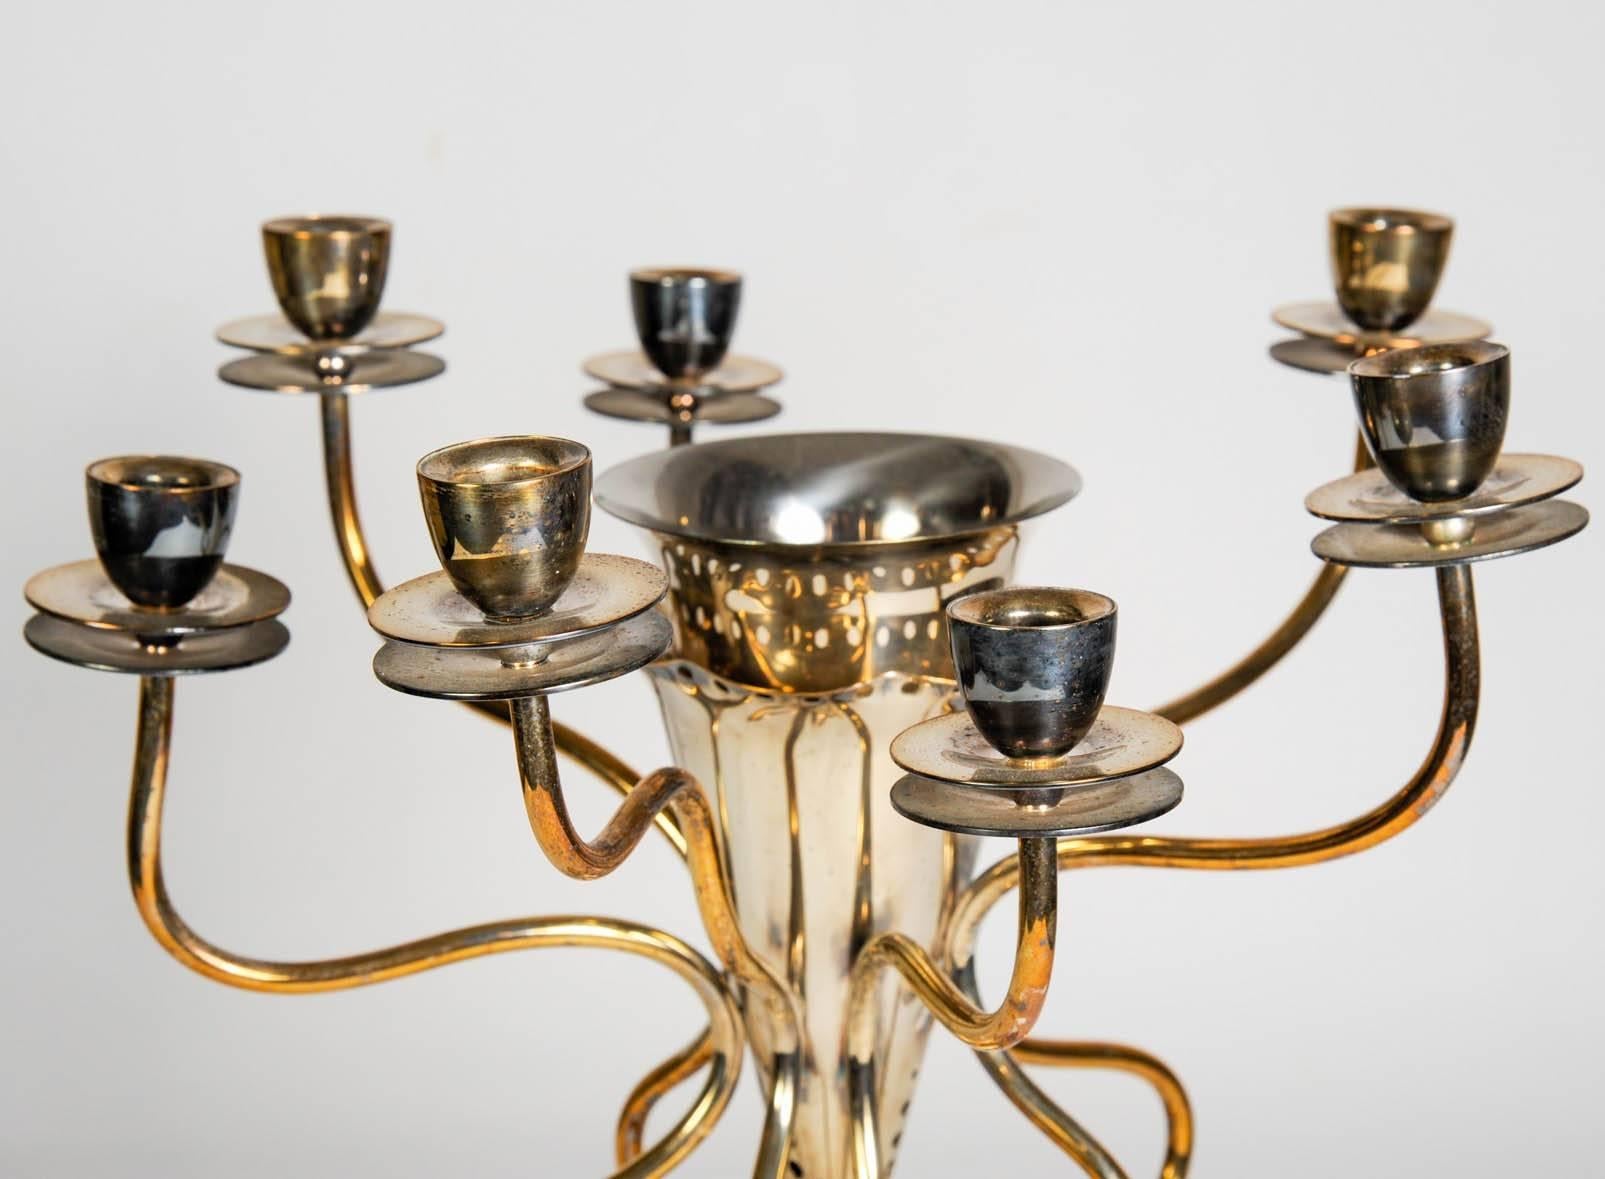 Versilberter Kerzenhalter mit eingearbeiteter Vase, 1980er Jahre 
von Borek Sipek.
Preis für 1 
Möglichkeit einer zweiten, um ein Paar zu bilden